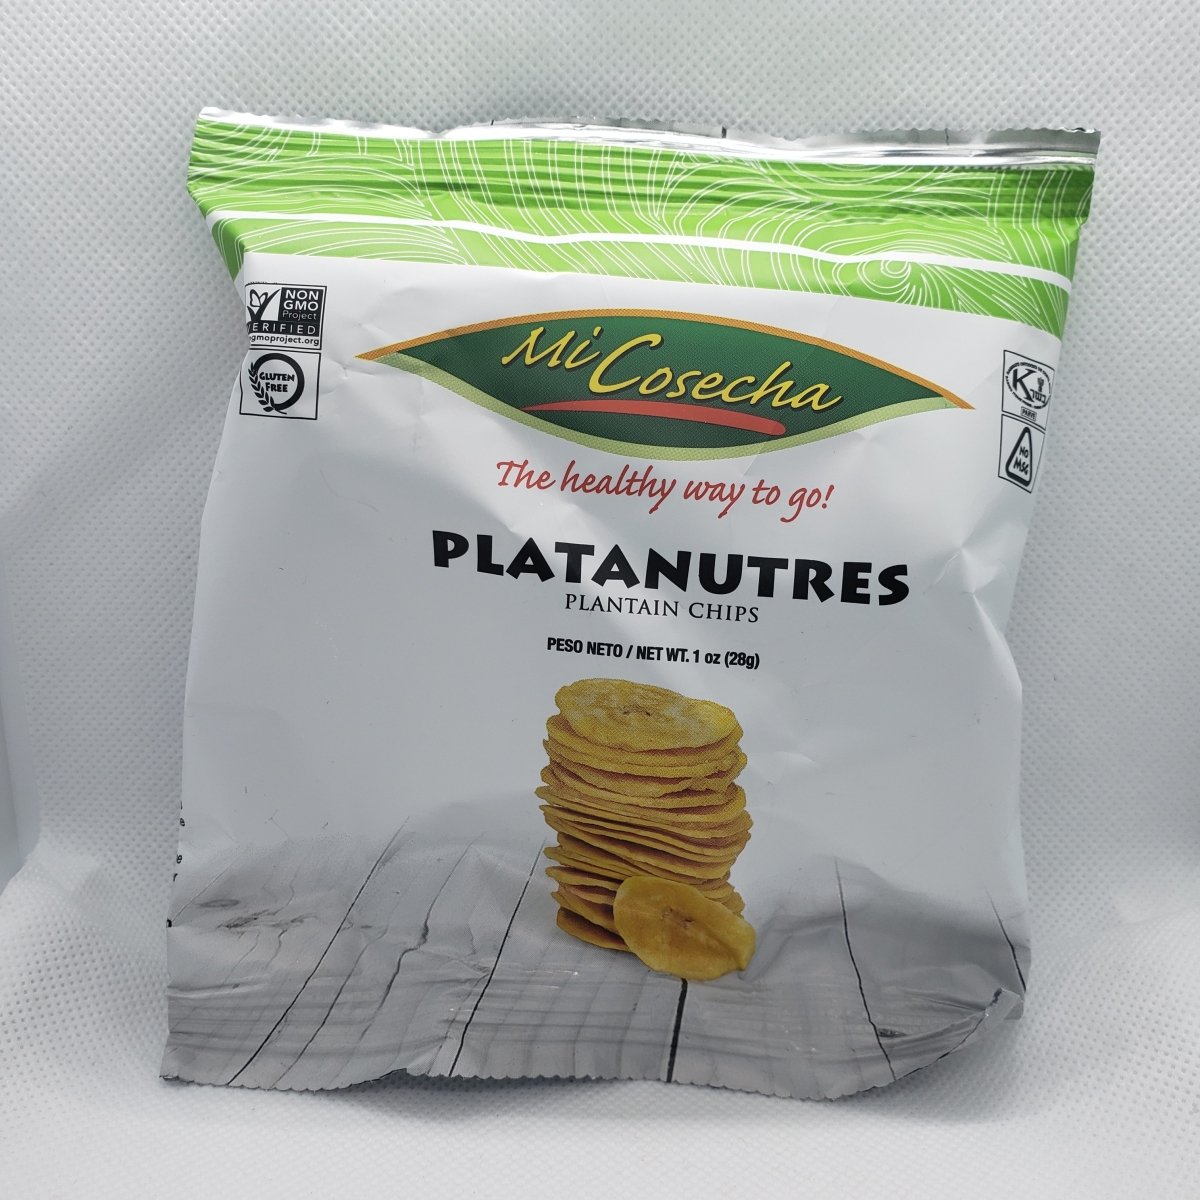 Platanutres - Plantain Chips - Snack - 1oz - 1 Bag